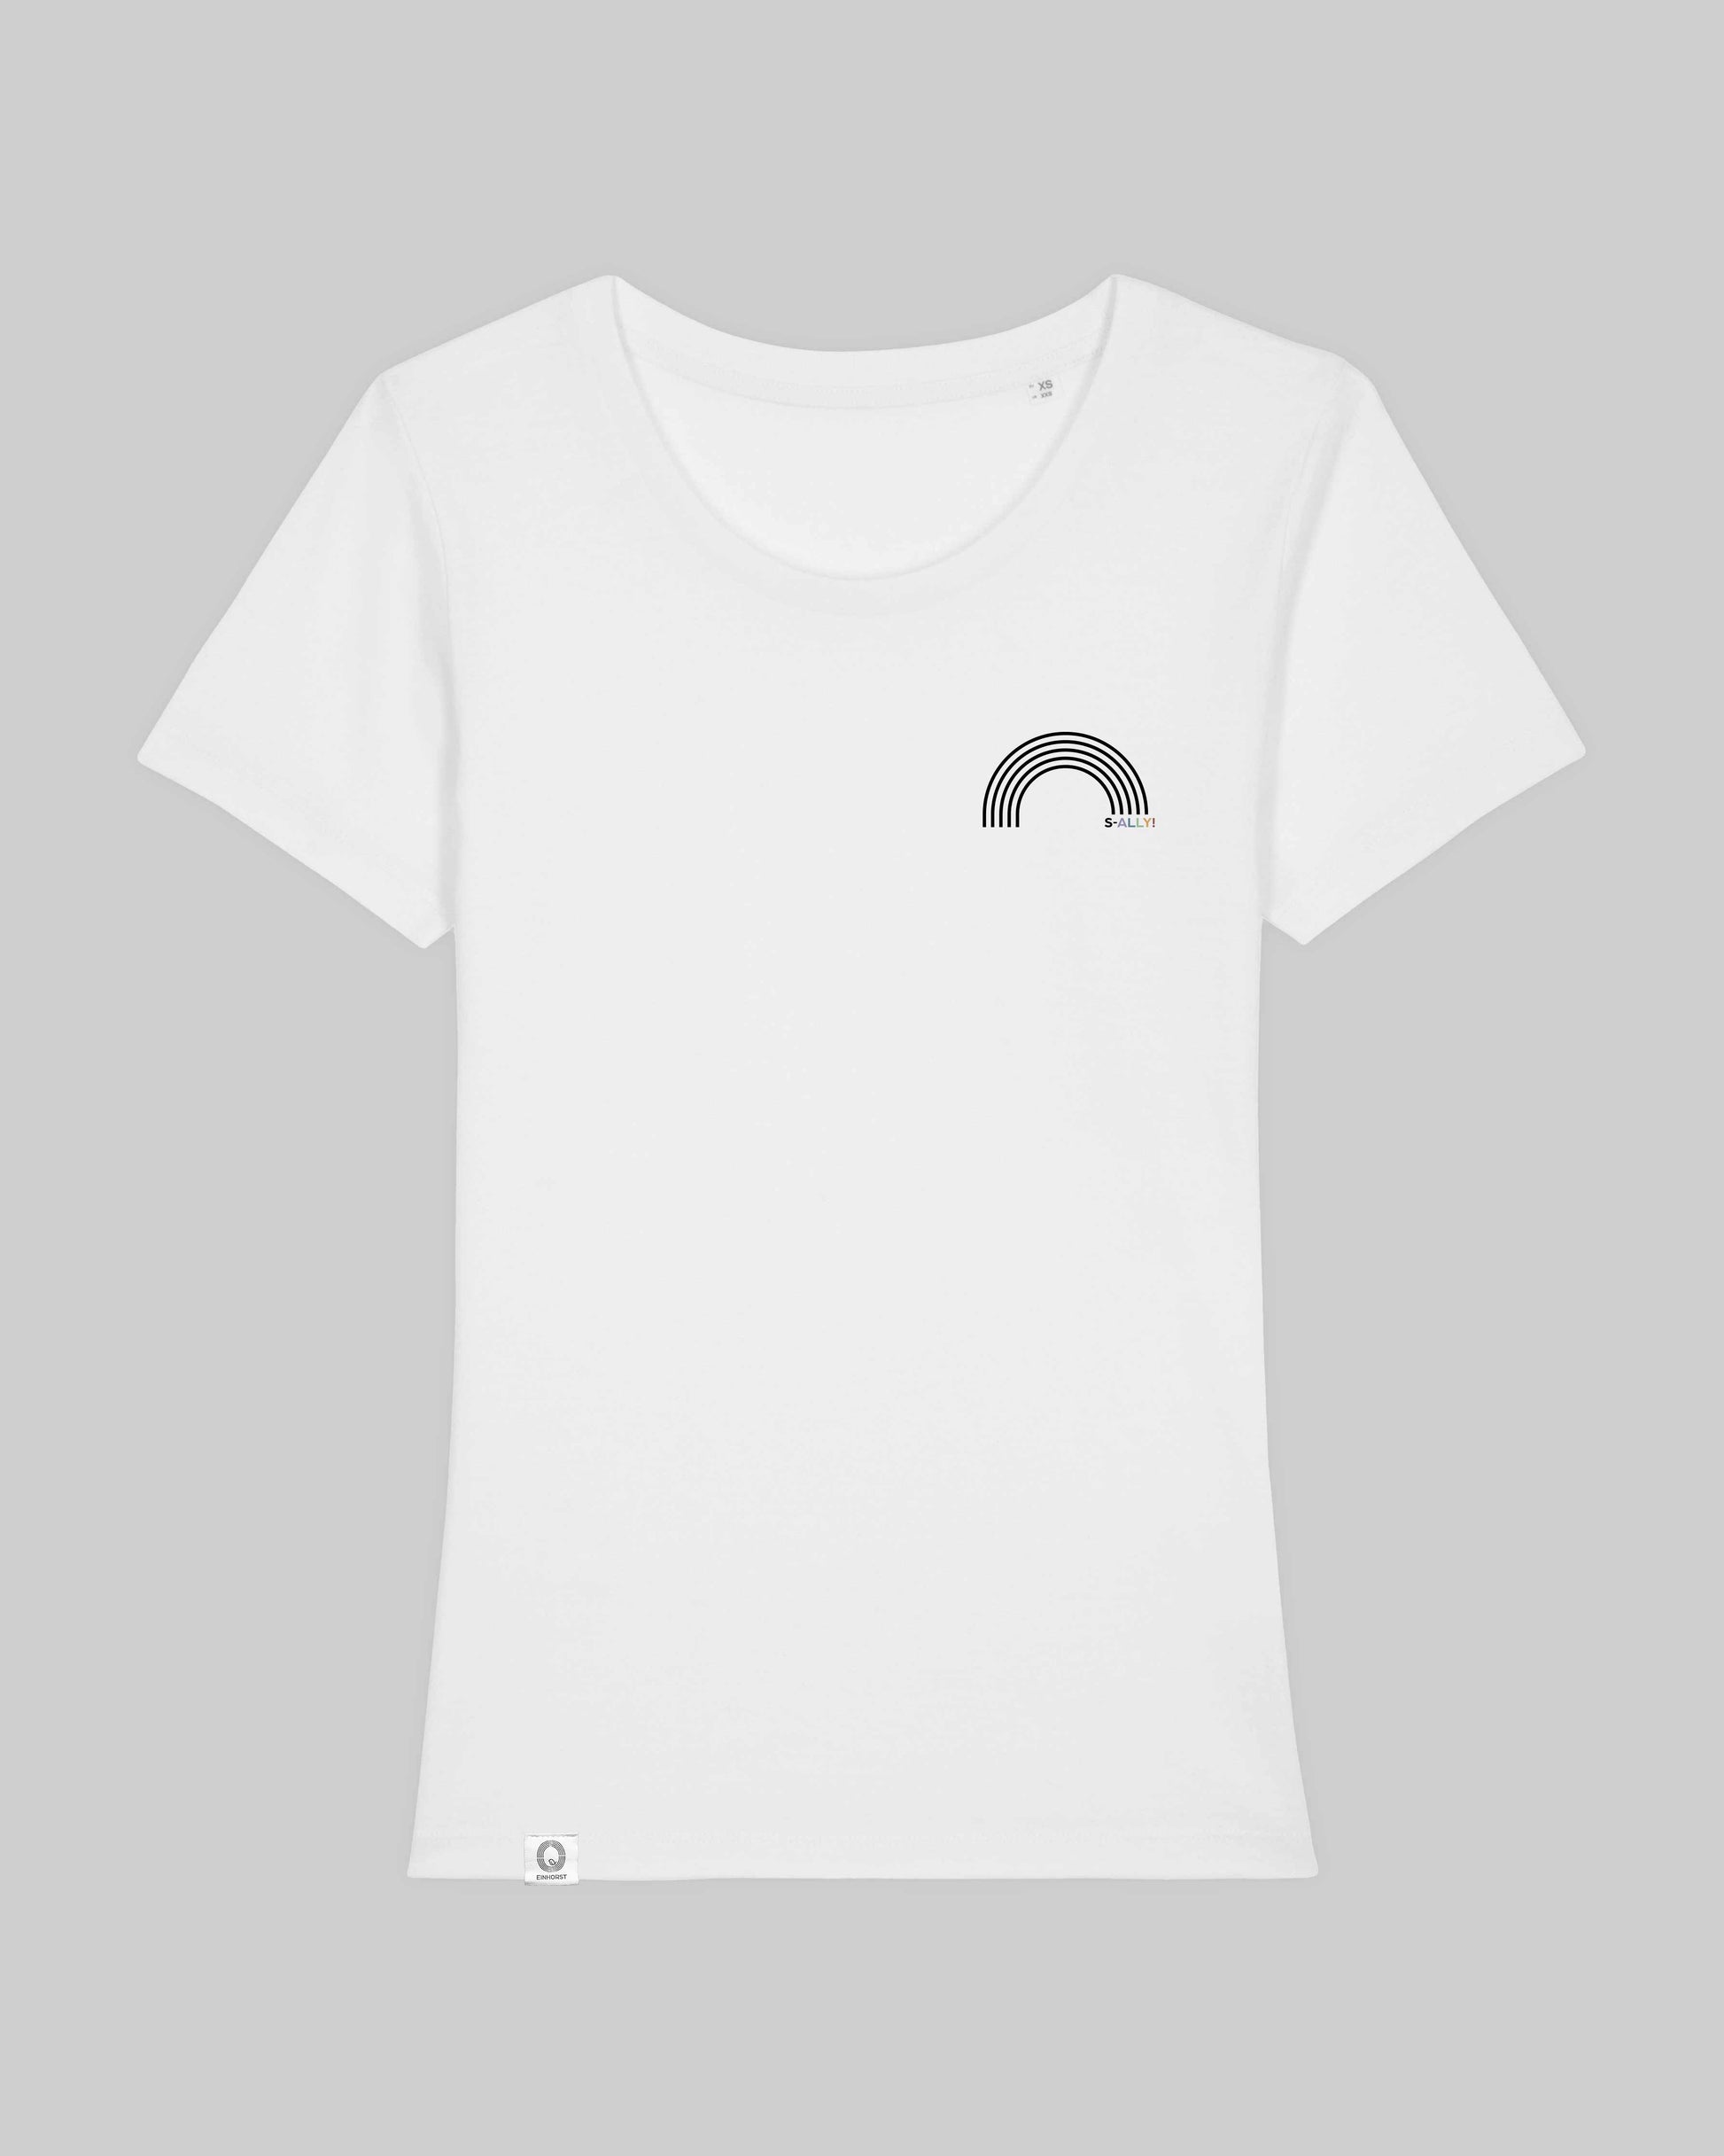 EINHORST® Organic Shirt tailliert in "Weiß" mit dem Motiv "s-ally Regenbogen" in der Kombination schwarzer Regenbogen mit bunter Schrift, Bild von Shirt von vorne